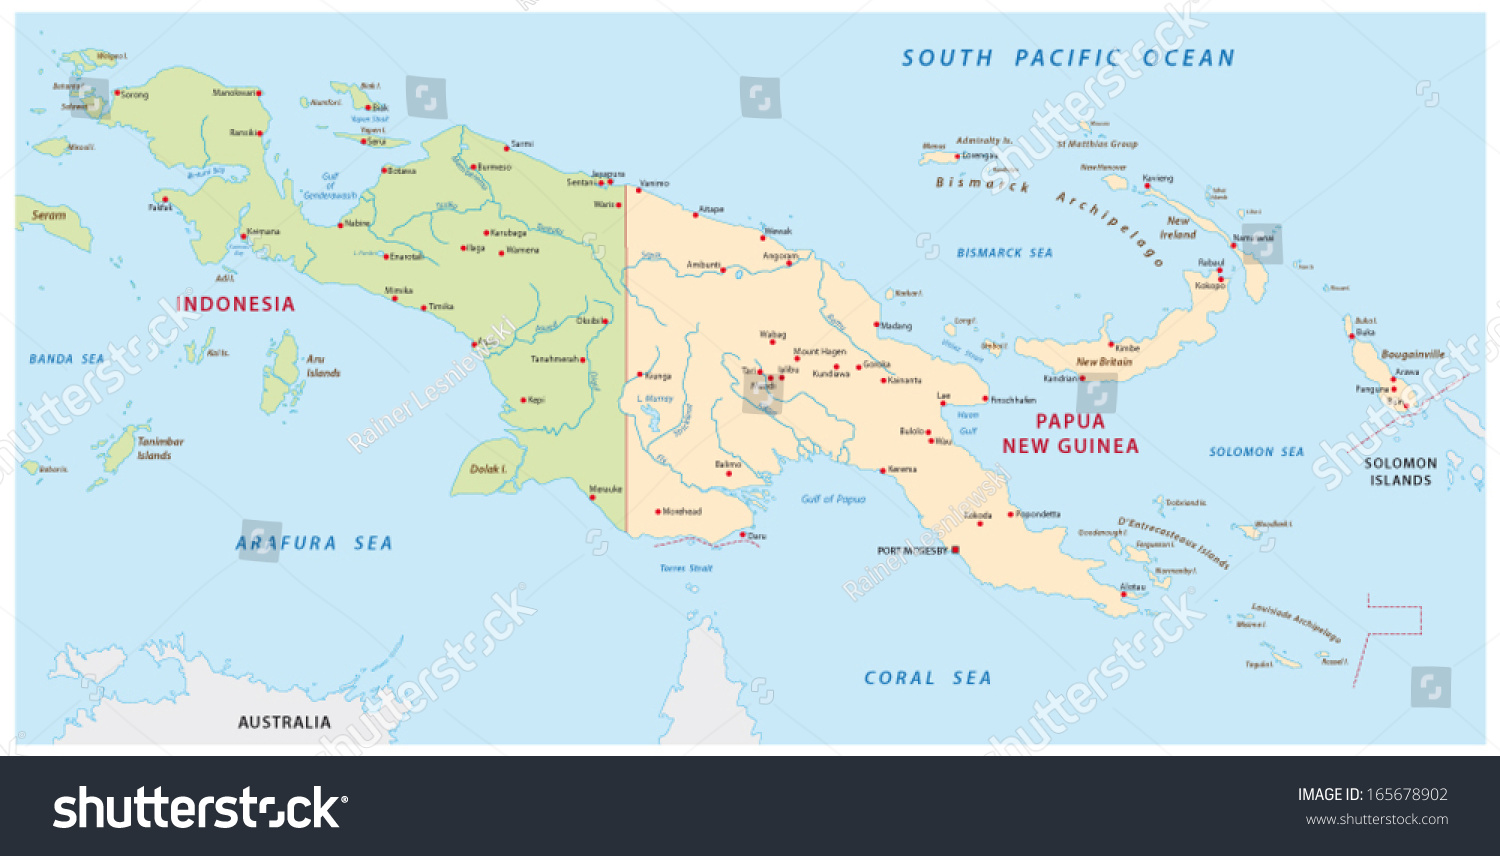 Australia Papua New Guinea Map Images Stock Photos Vectors